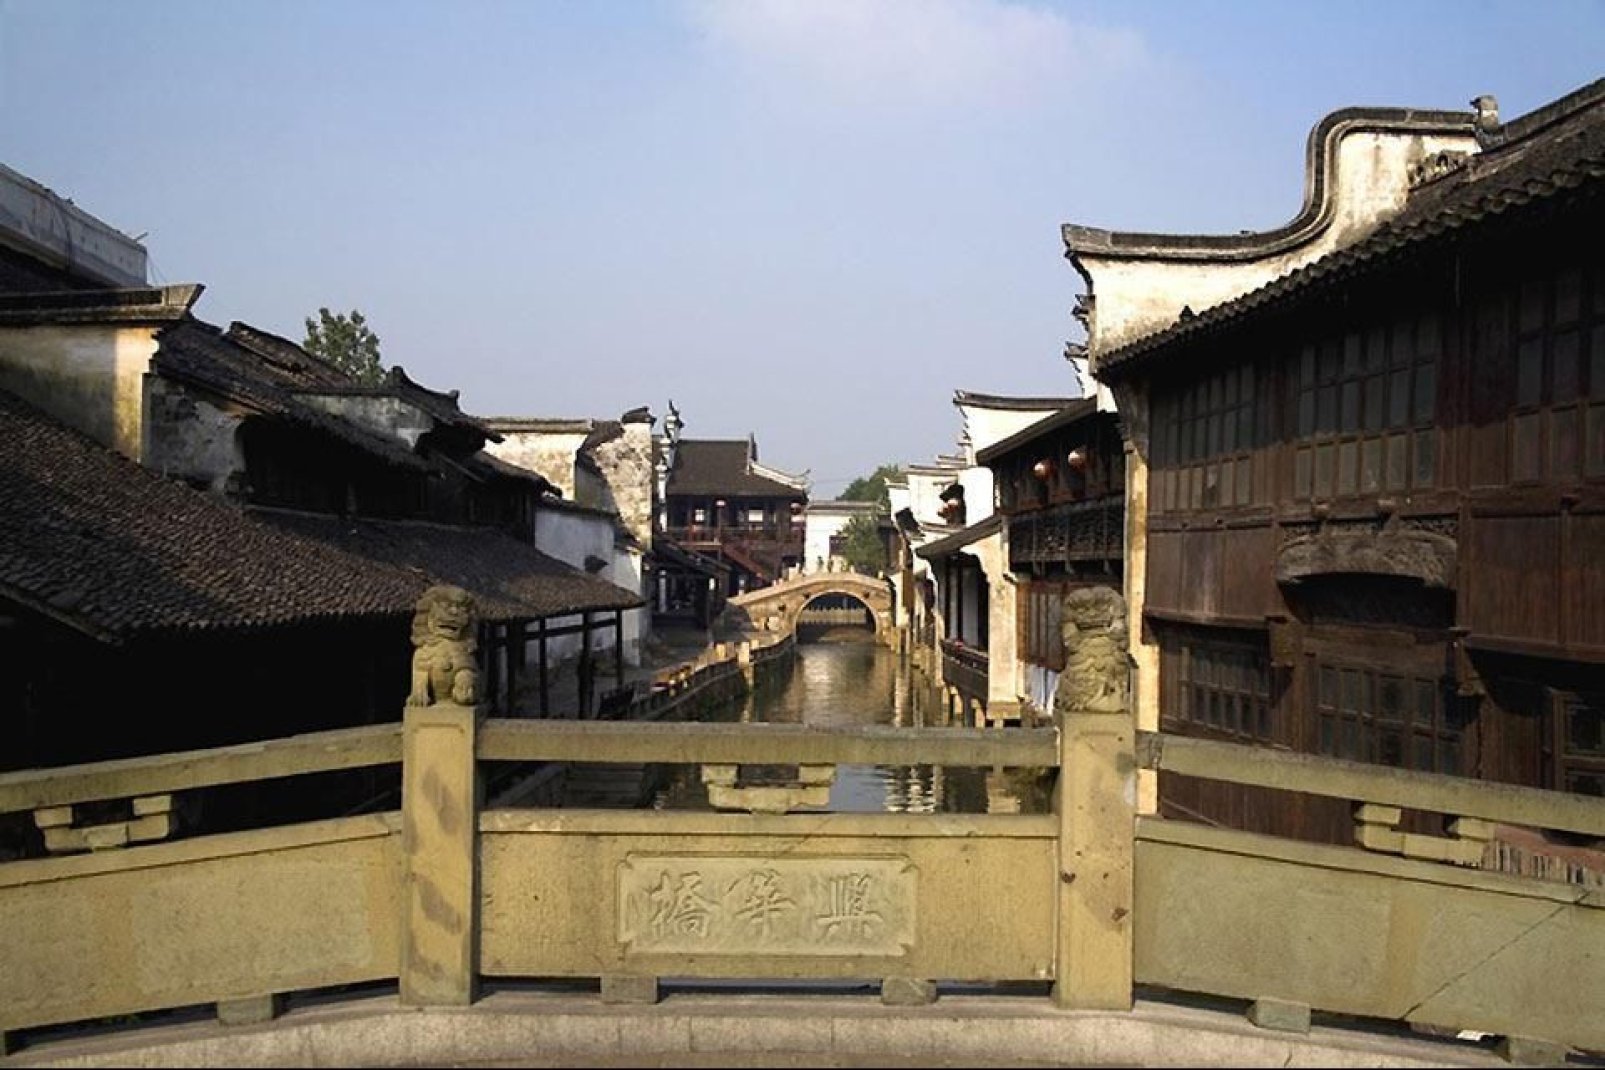 La ciudad de Suzhou, antigua capital del reino Wu, es famosa por sus jardines y construcciones de agua.